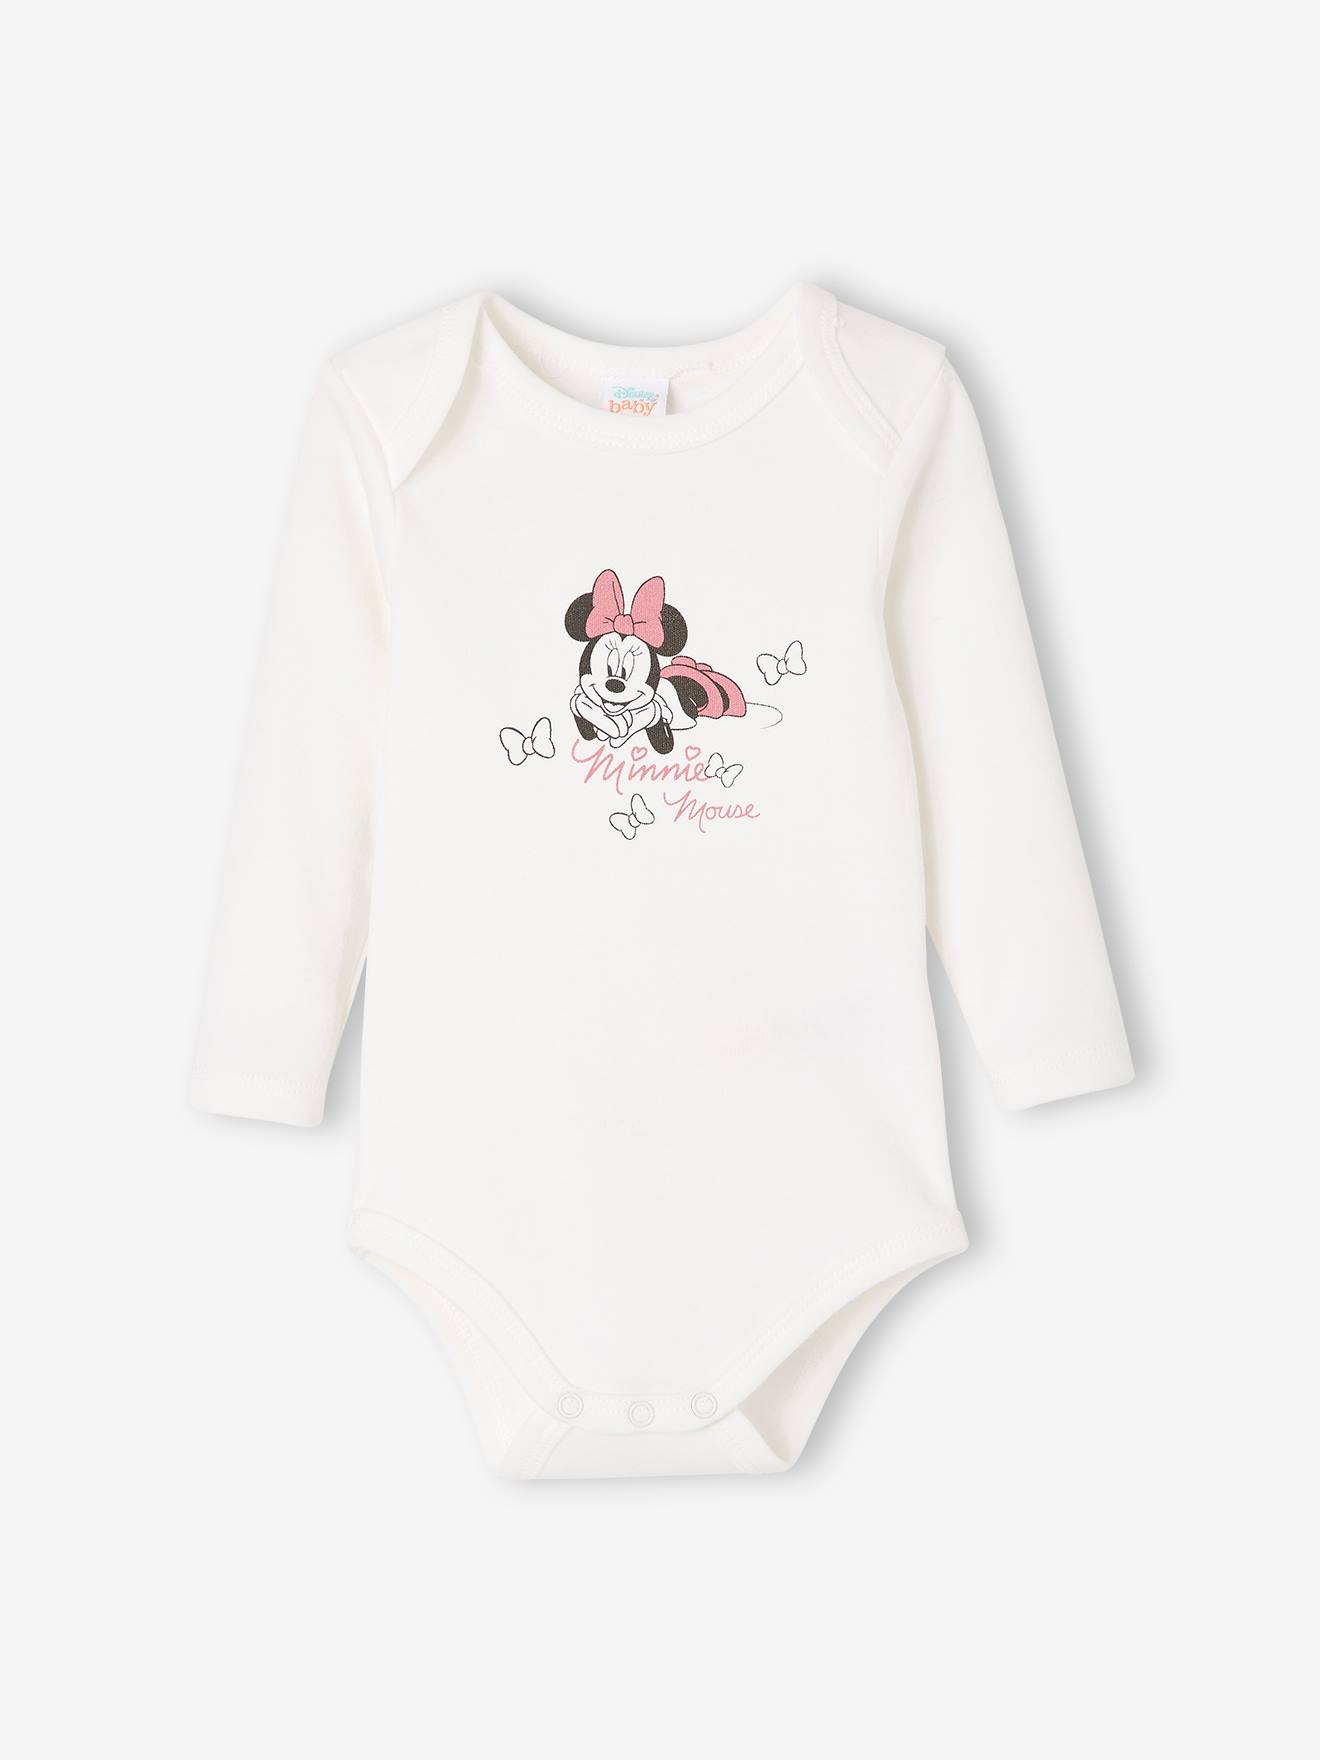 Lot de 2 bodies bébé fille Disney® Minnie - violet moyen uni avec decor,  Bébé